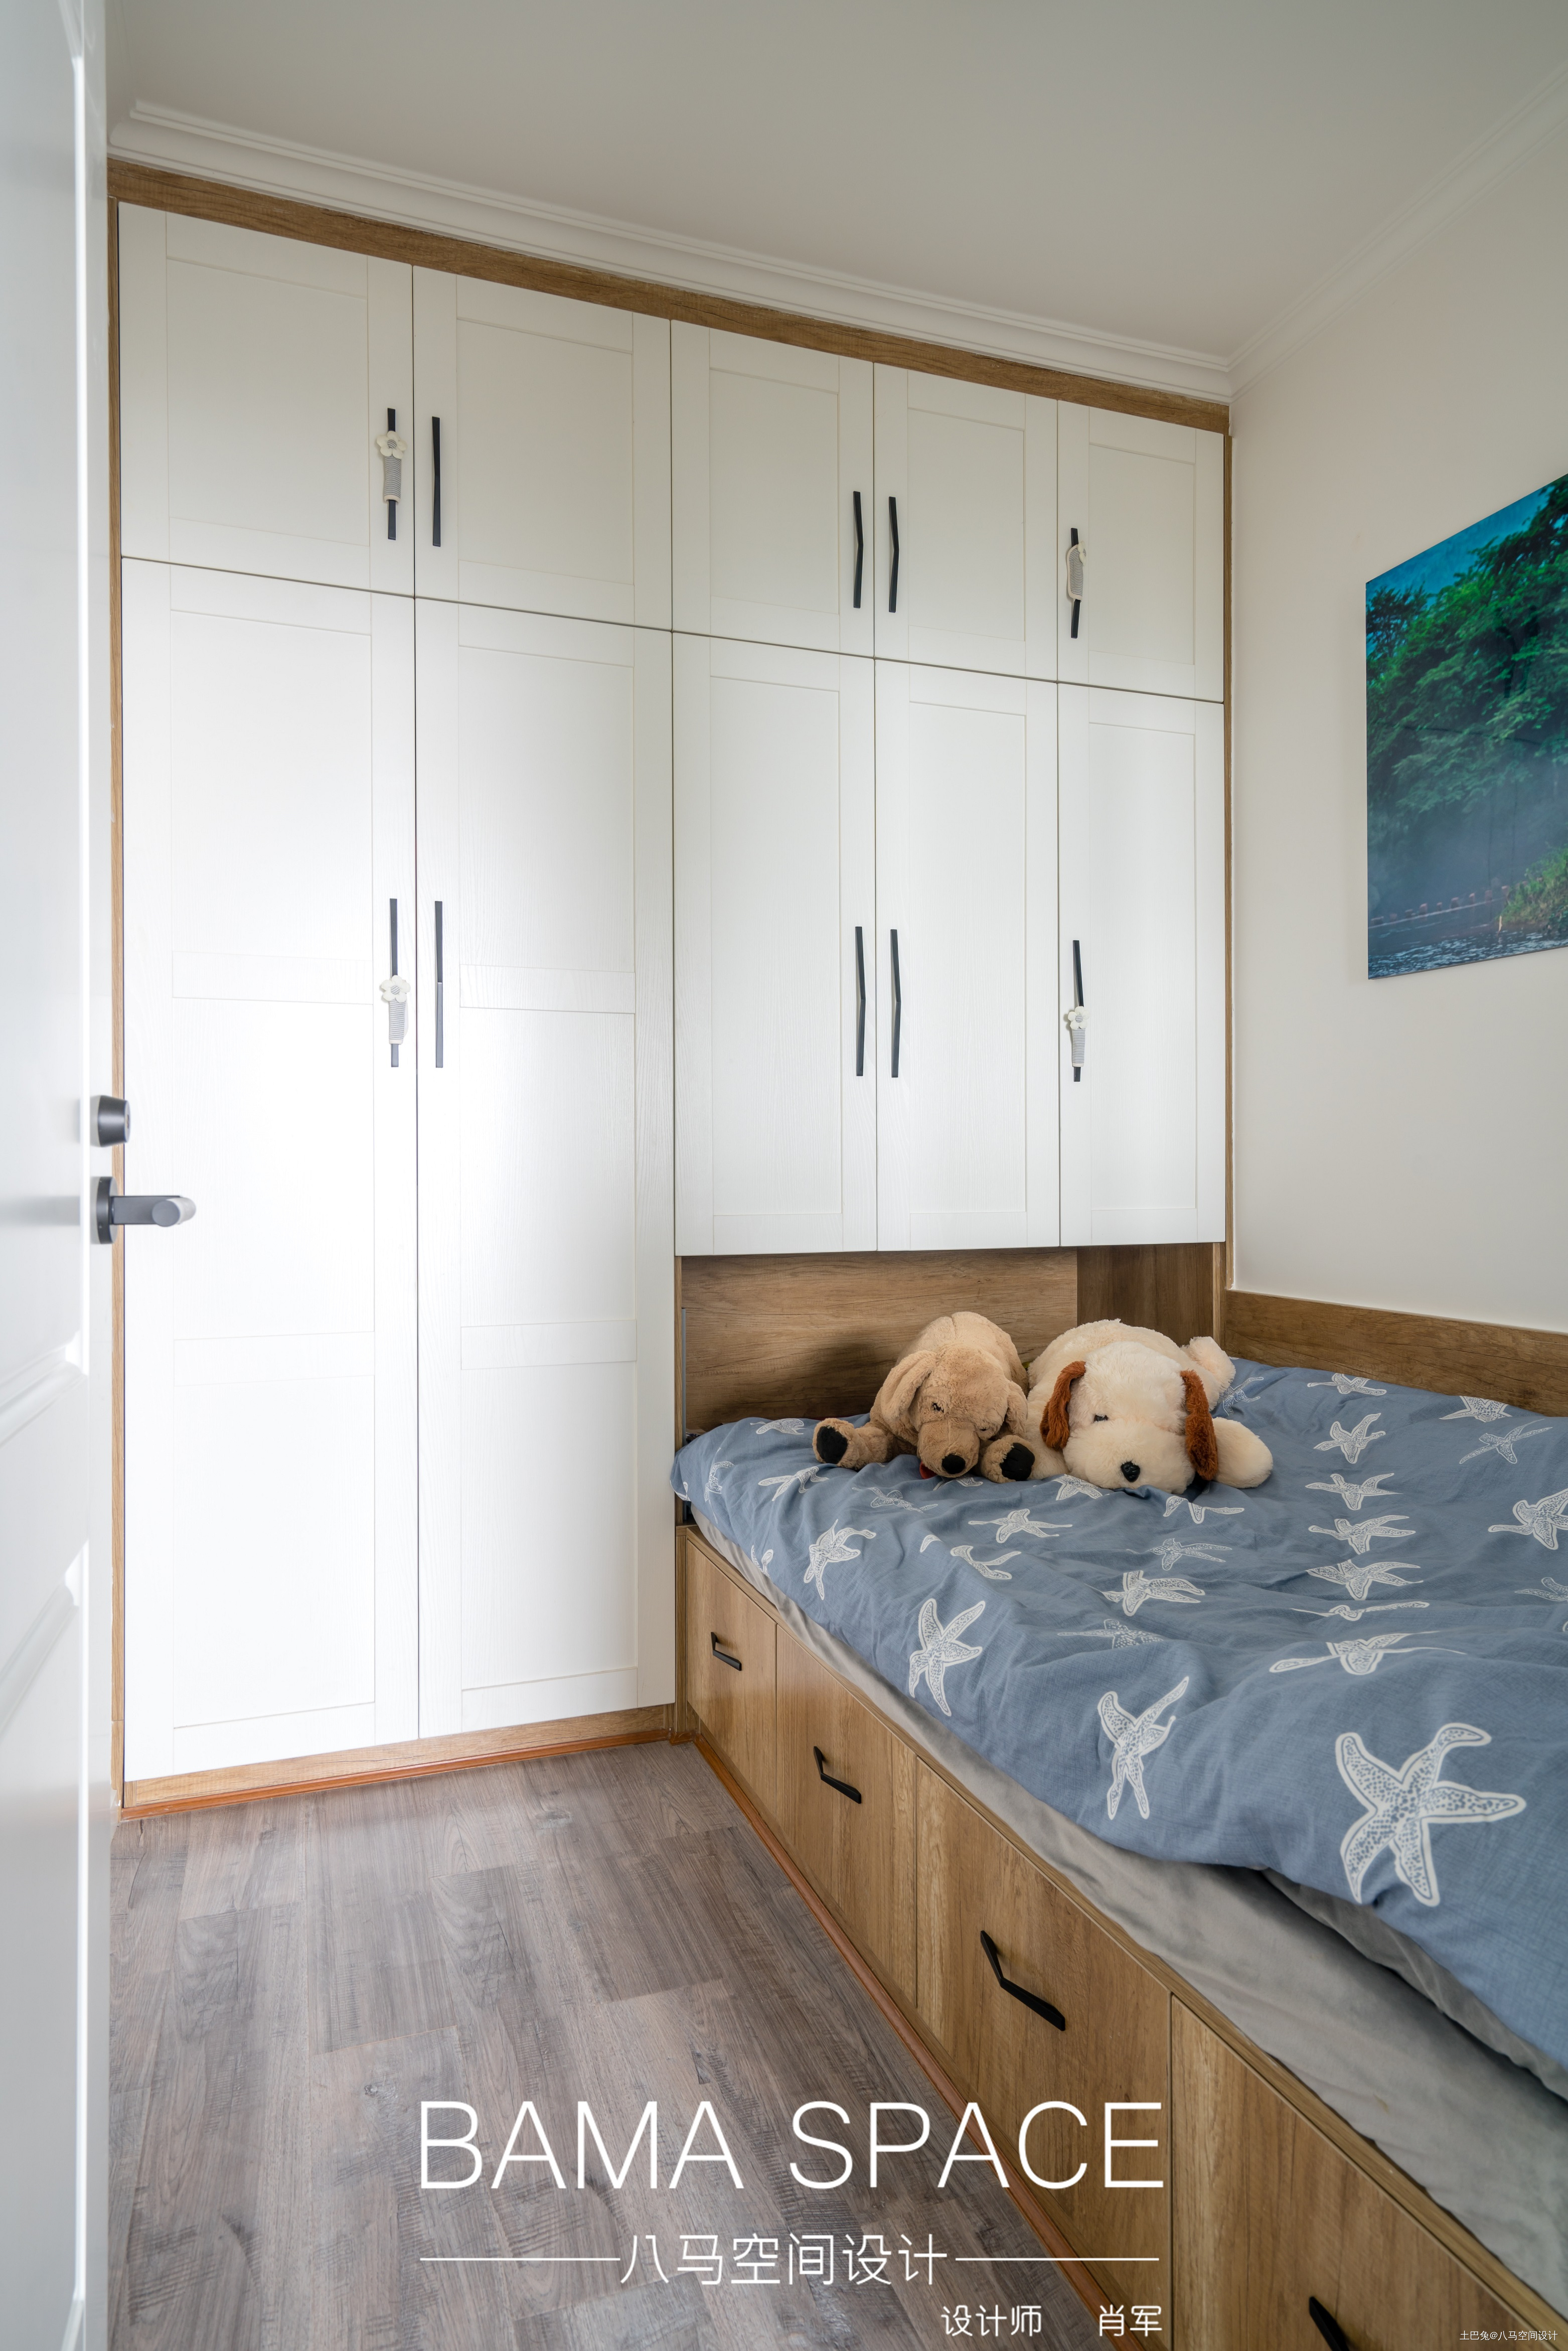 《暖家》丨八马空间设计北欧风卧室设计图片赏析